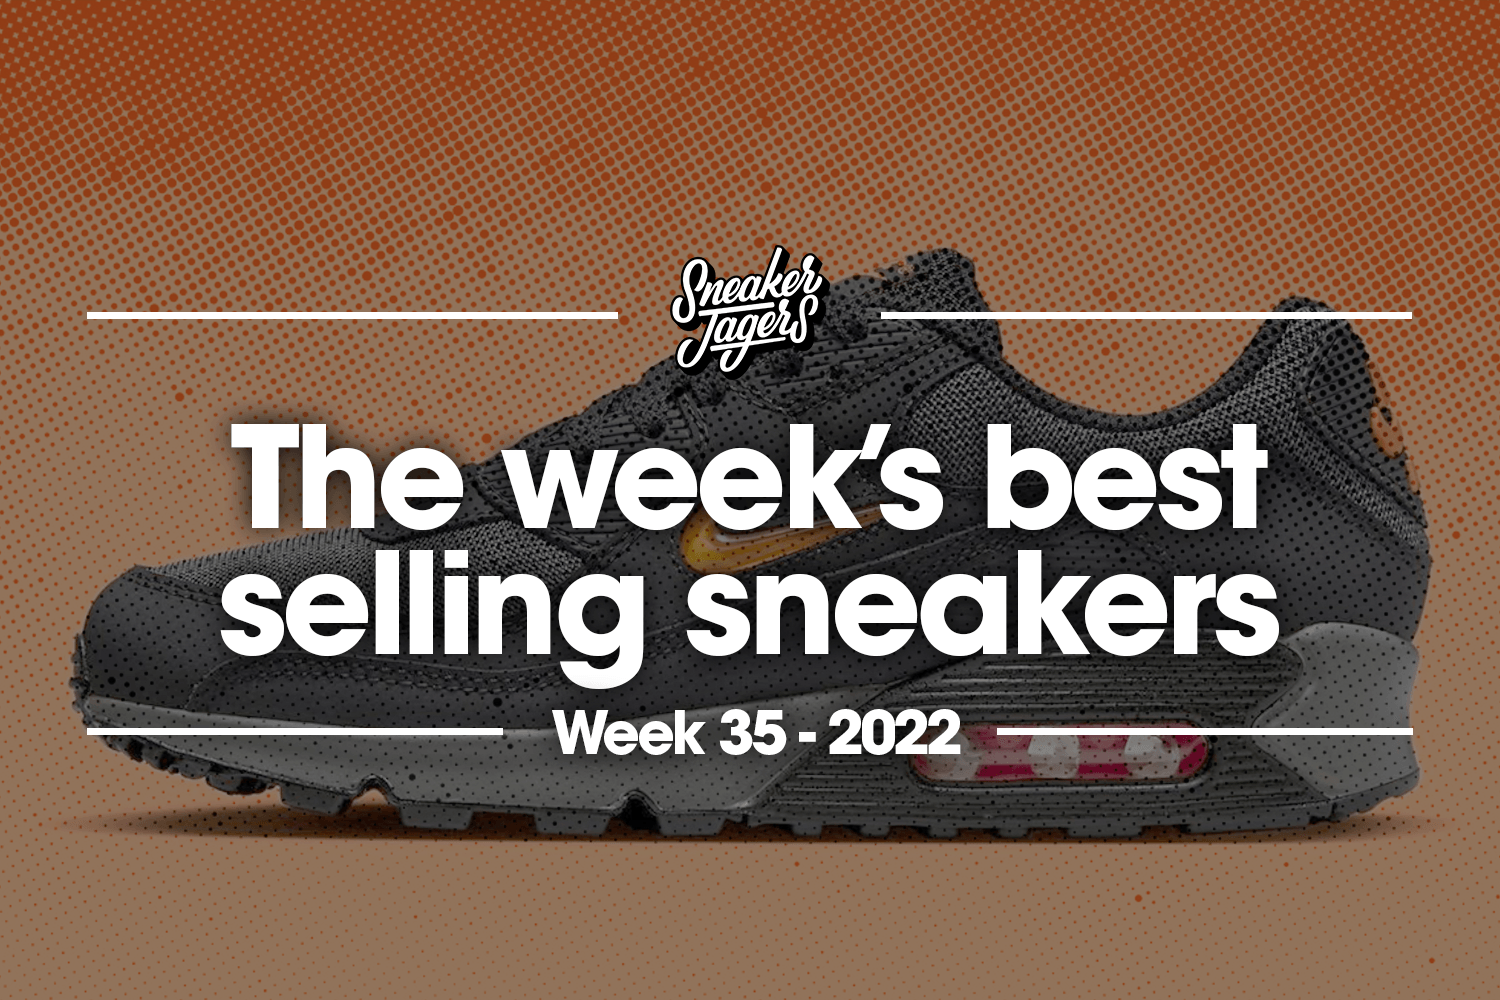 The 5 best-selling sneakers of week 35